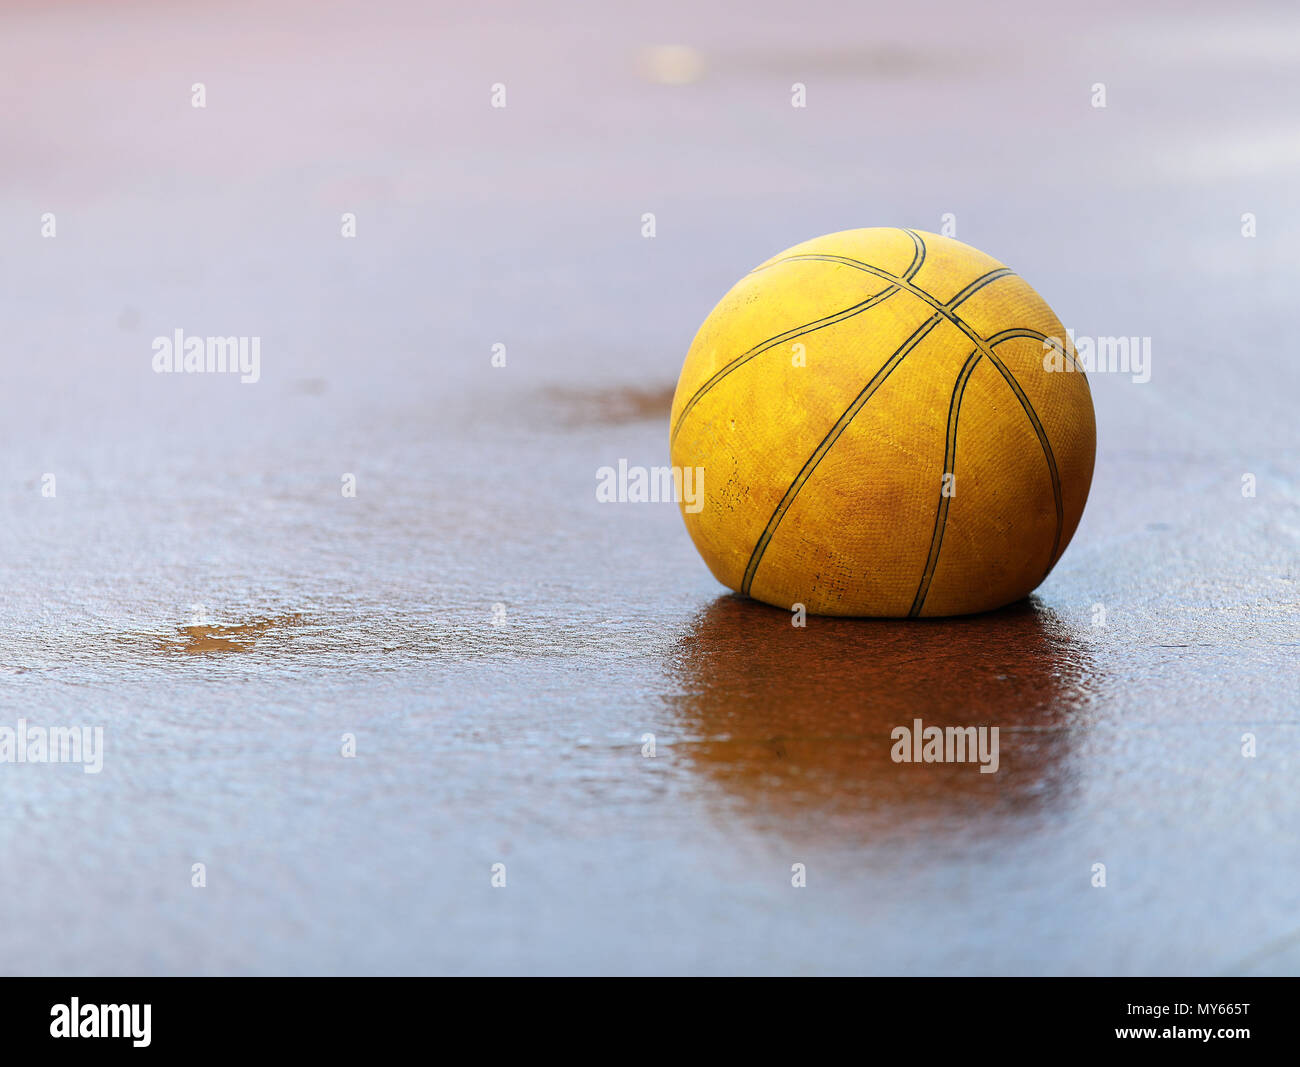 Un desinflado plana viejo cansado amarillo basket ball en el concreto húmedo el suelo. Concepto de sensación de piso, mala mala lluvioso, cansados, enfermos o necesitan ayuda. Foto de stock